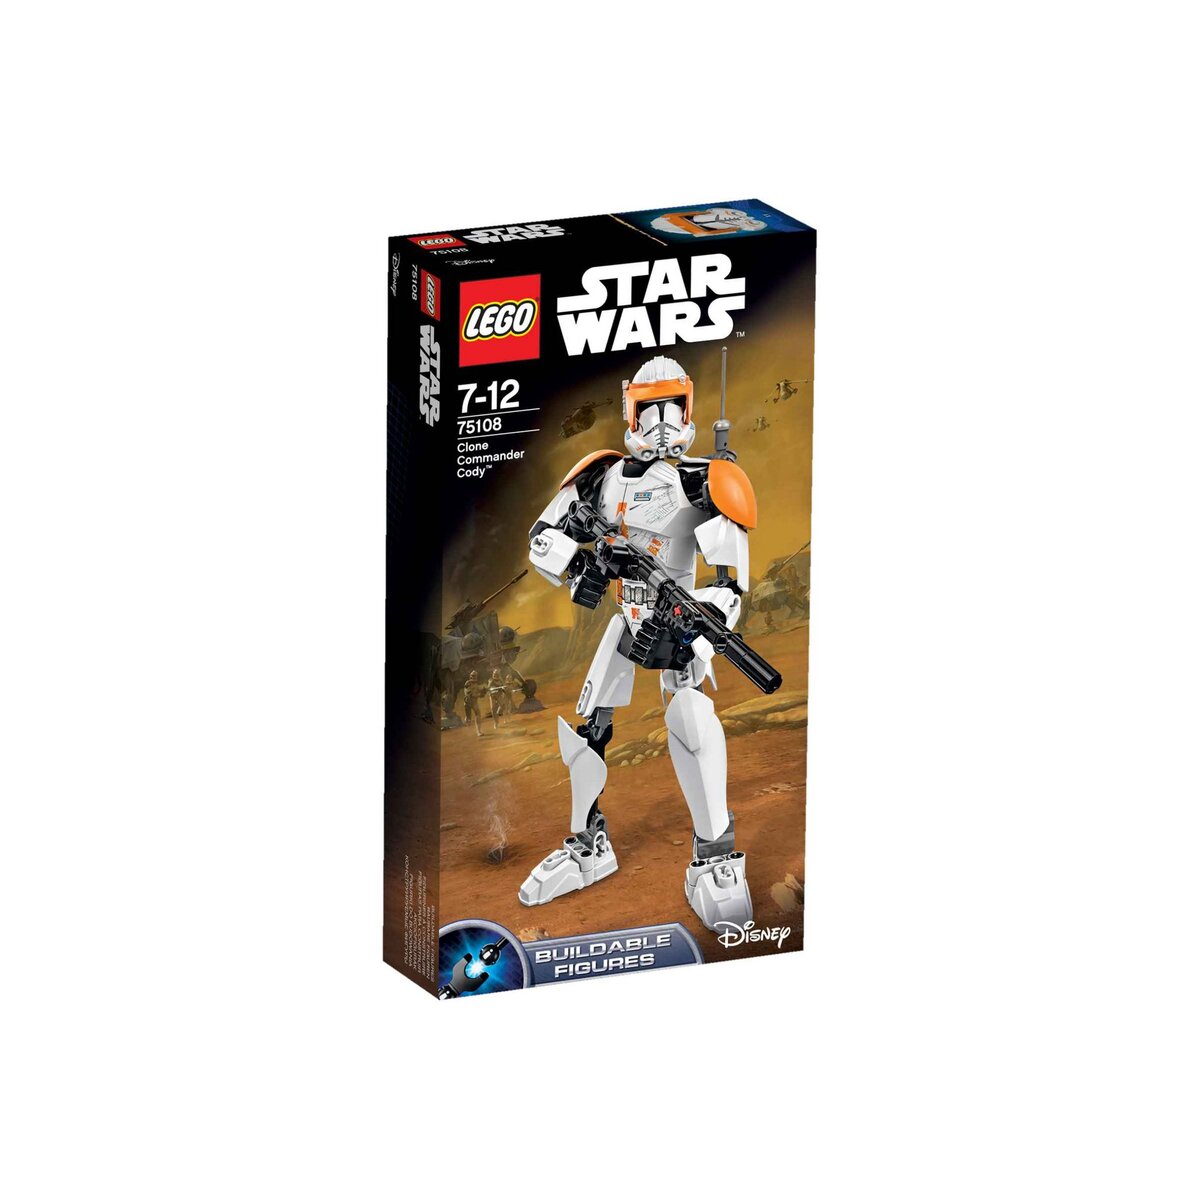 LEGO Star Wars 75108 - Commander Cody